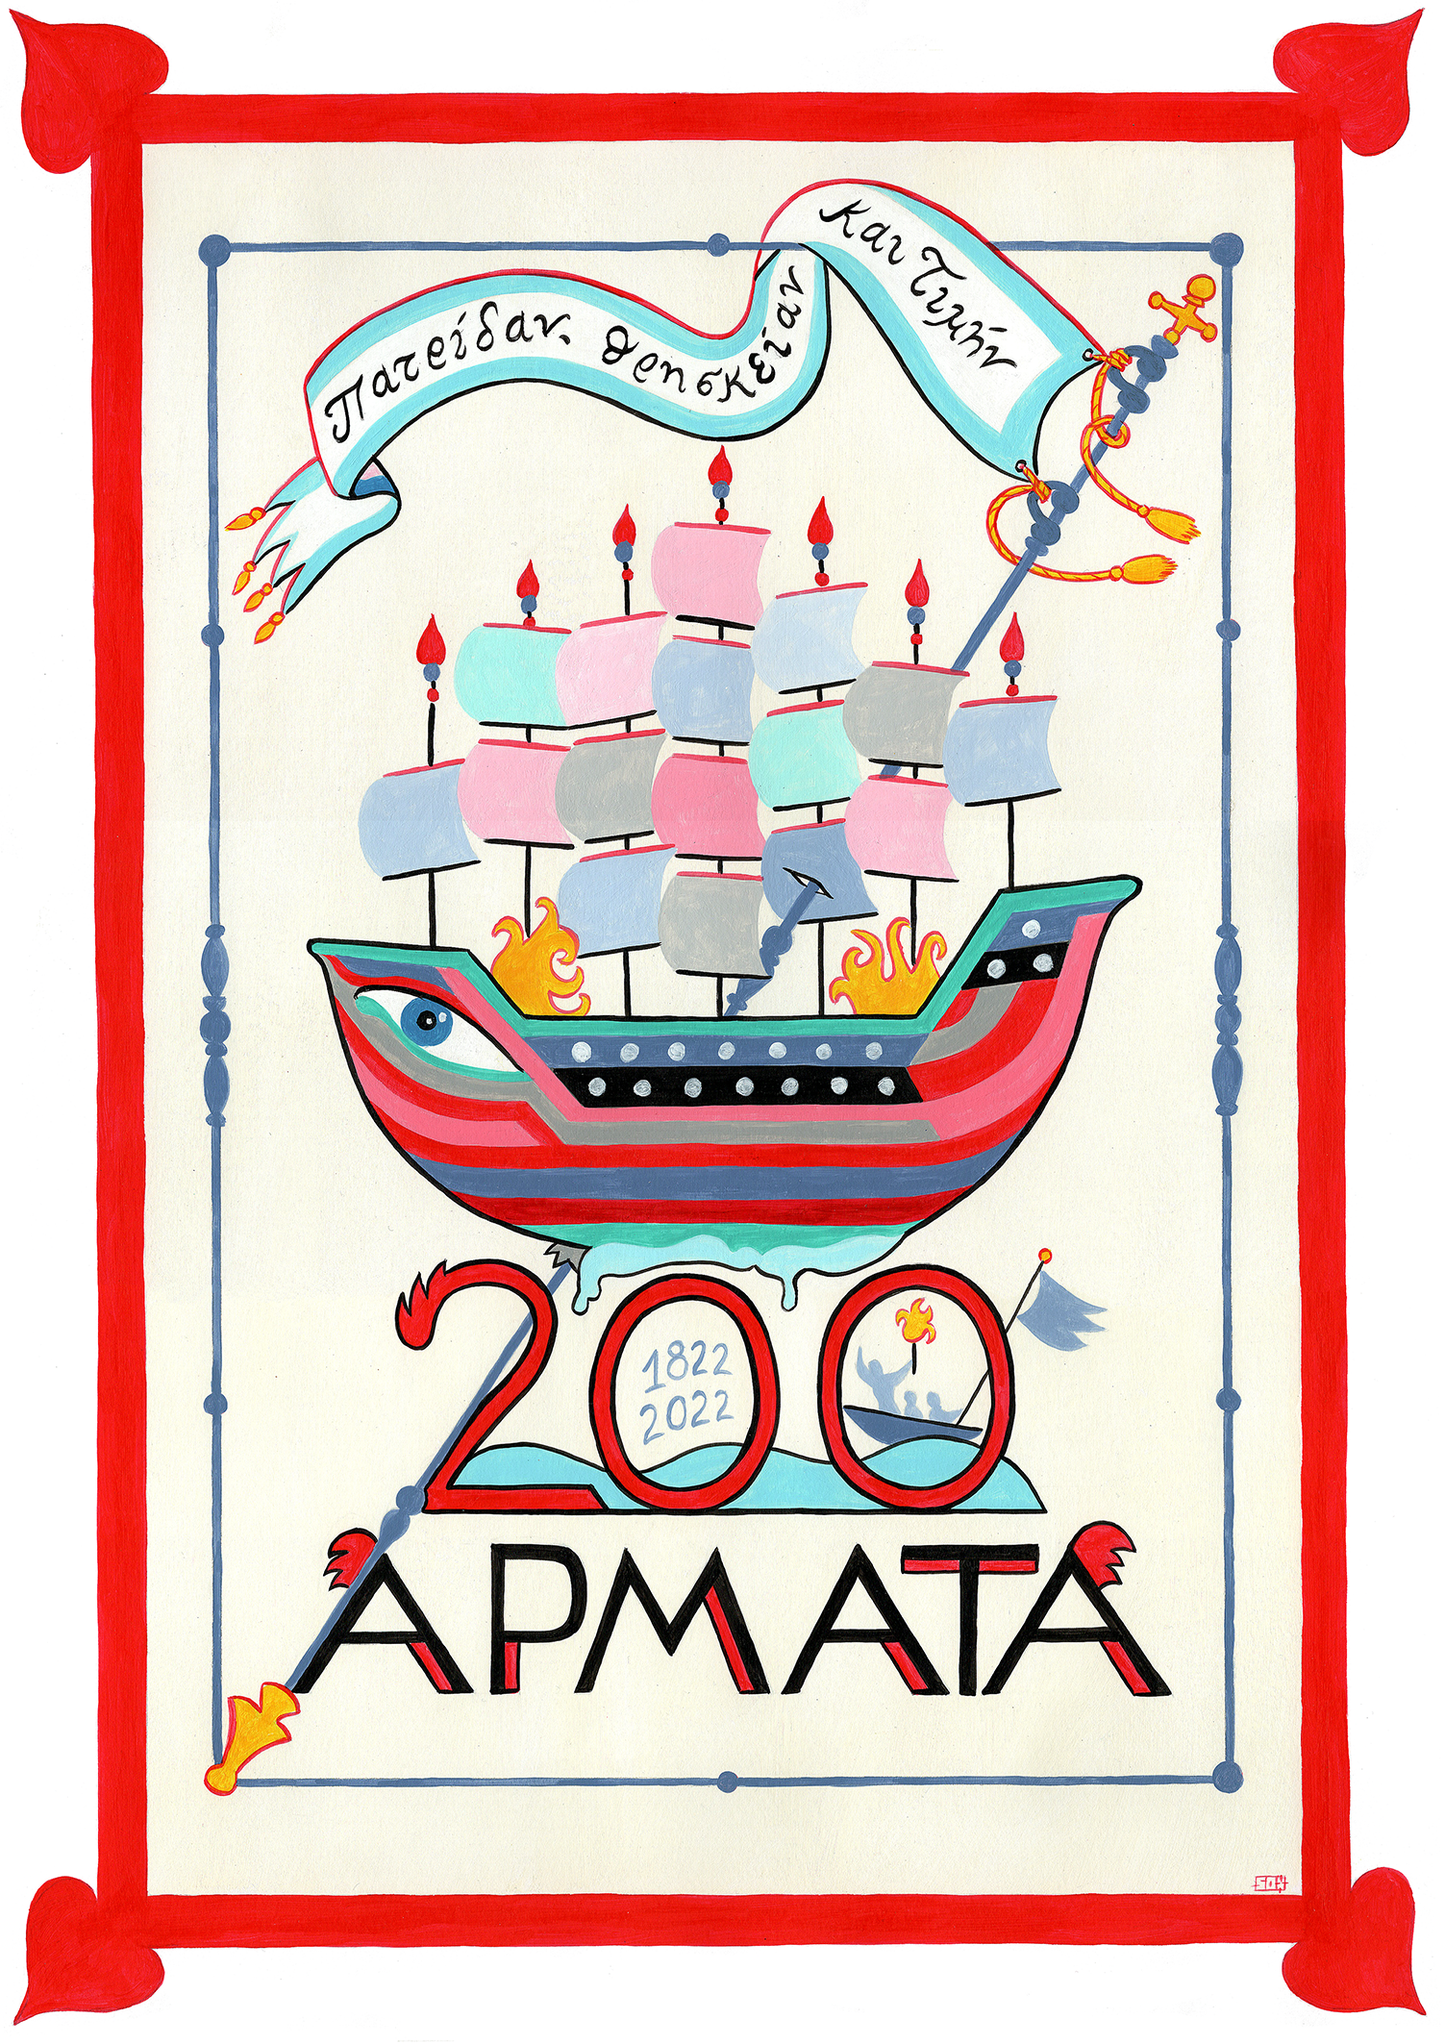 Armata 2022 (official)